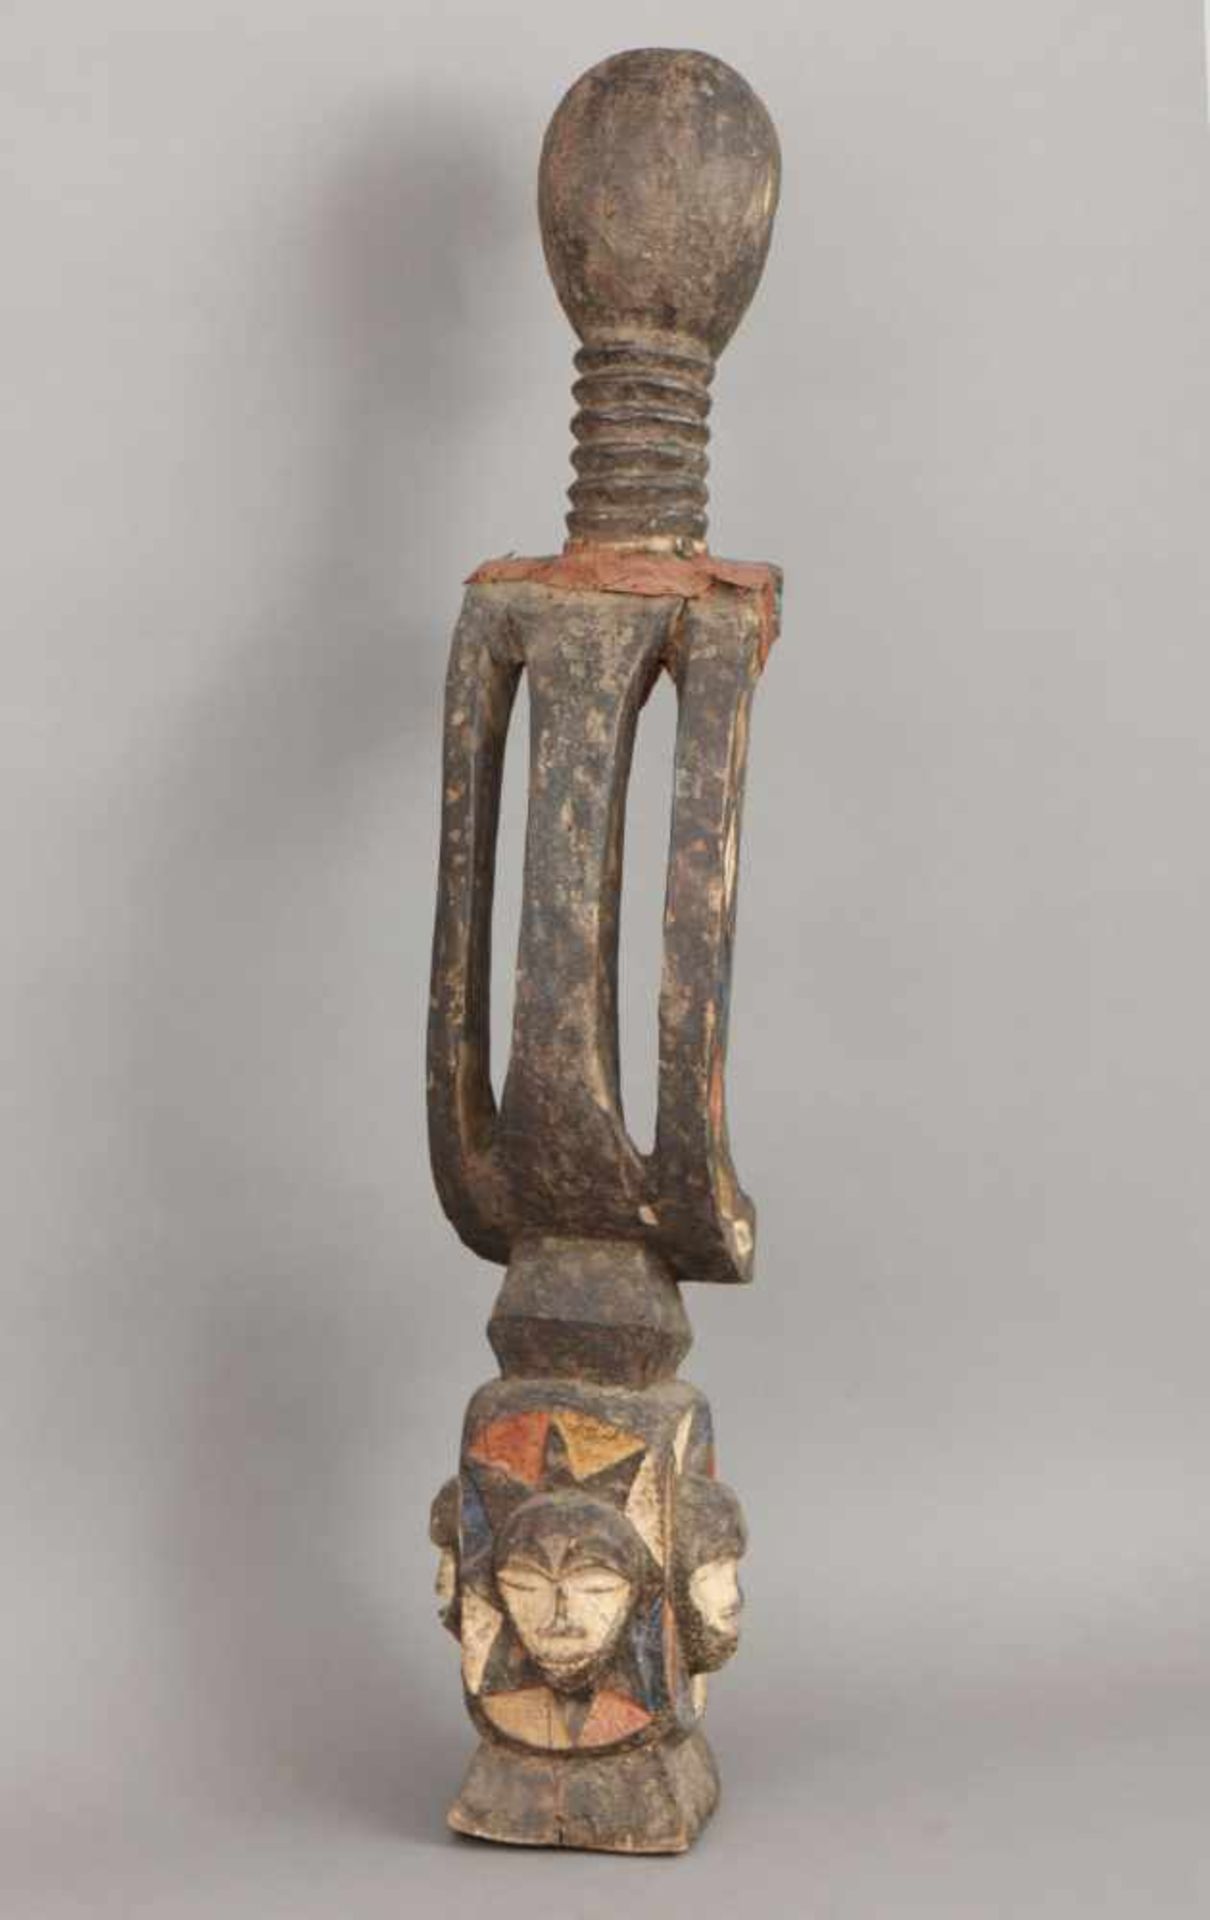 Afrikanische Ritual-/Ahnenfigur Holz, geschnitzt und geschwärzt, in Partien rot-weiß (Kaolin) - Bild 3 aus 4